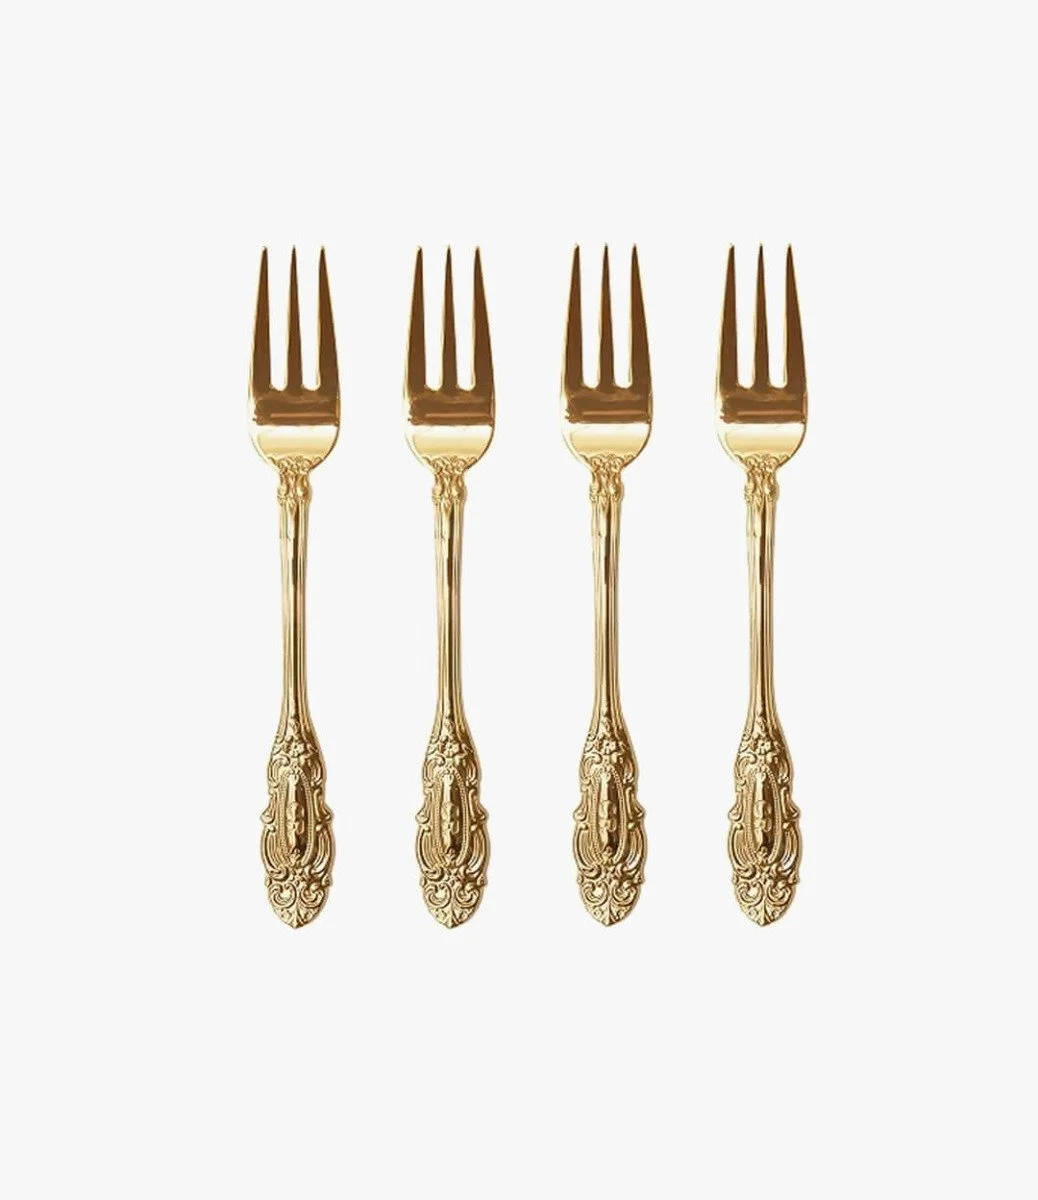 Vintage Fork Set By Cristina Re